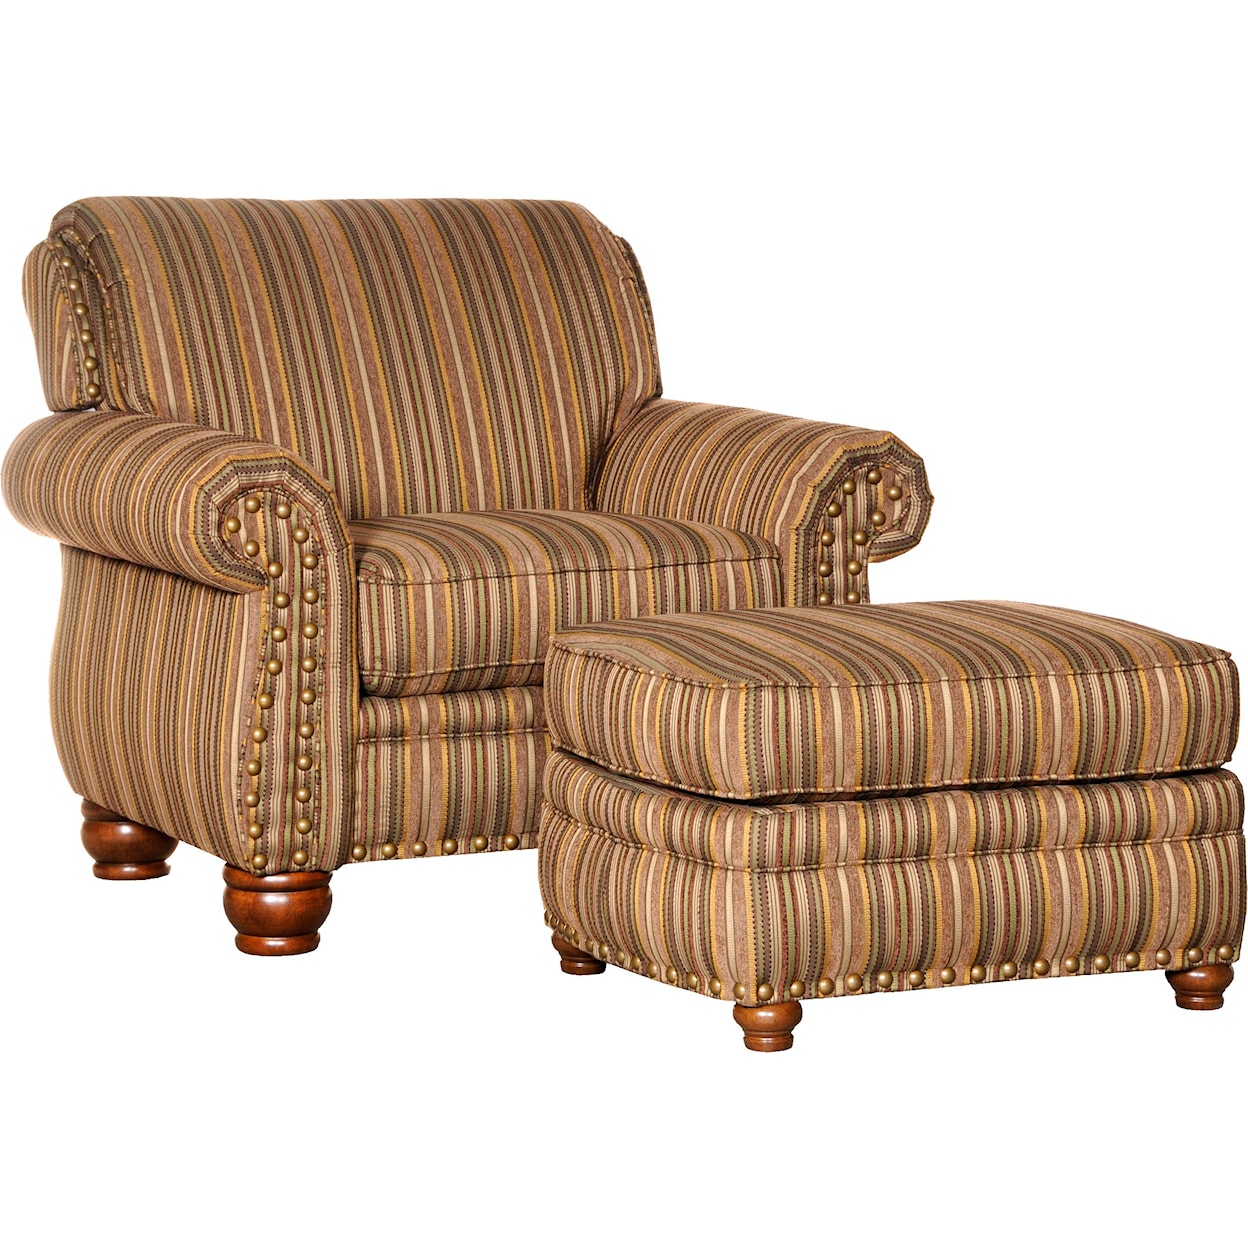 Mayo 9780 Chair and Ottoman